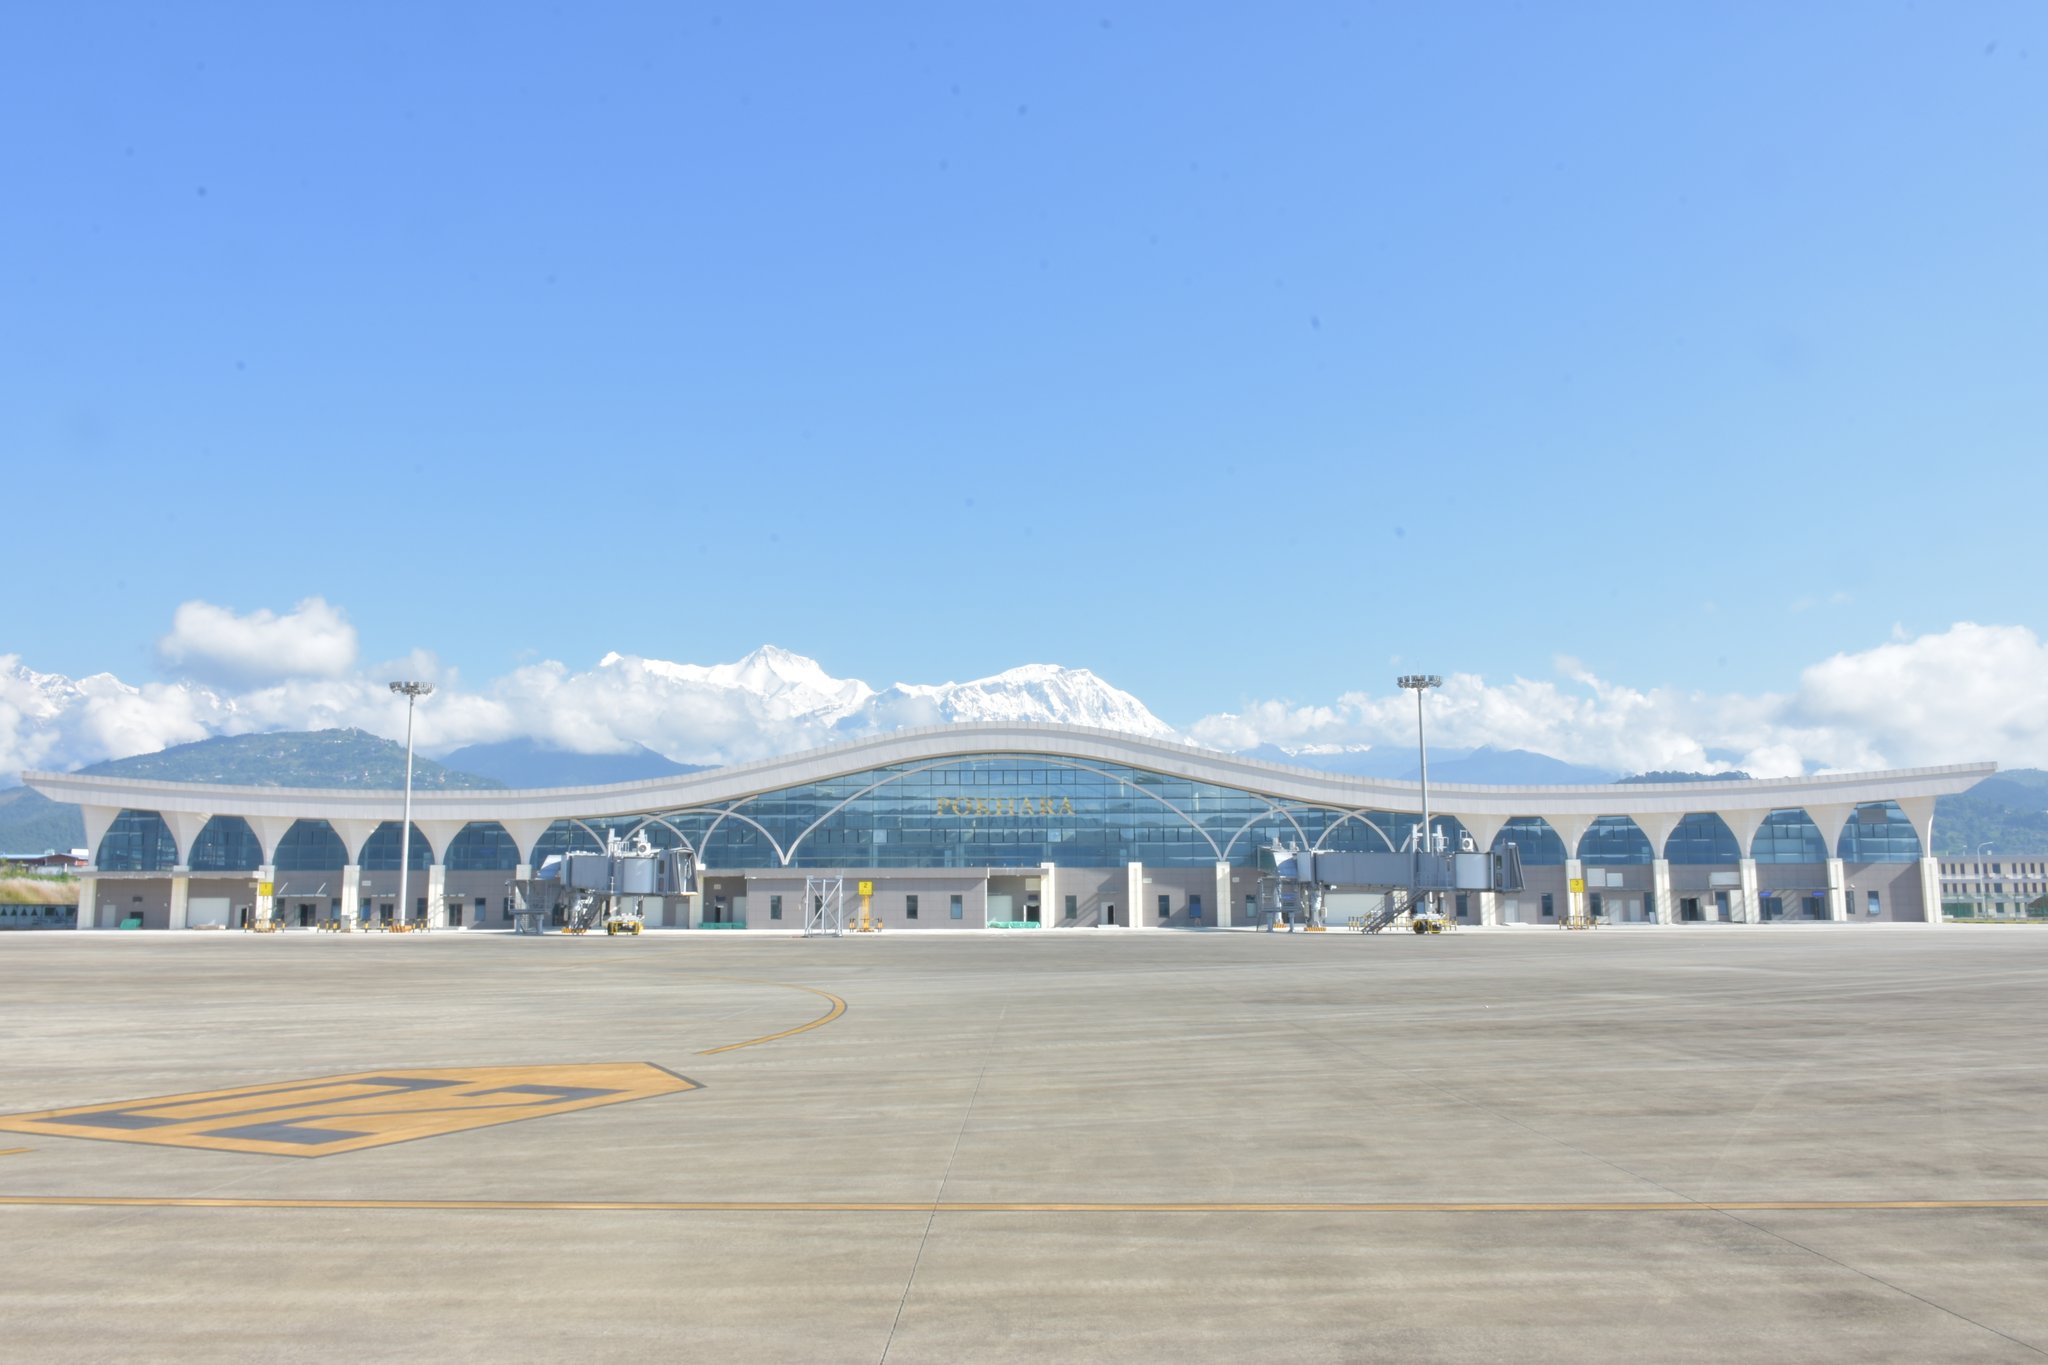 चीनले भन्यो- ‘पोखरा एयरपोर्ट बीआरआईअन्तरगतको परियोजना’